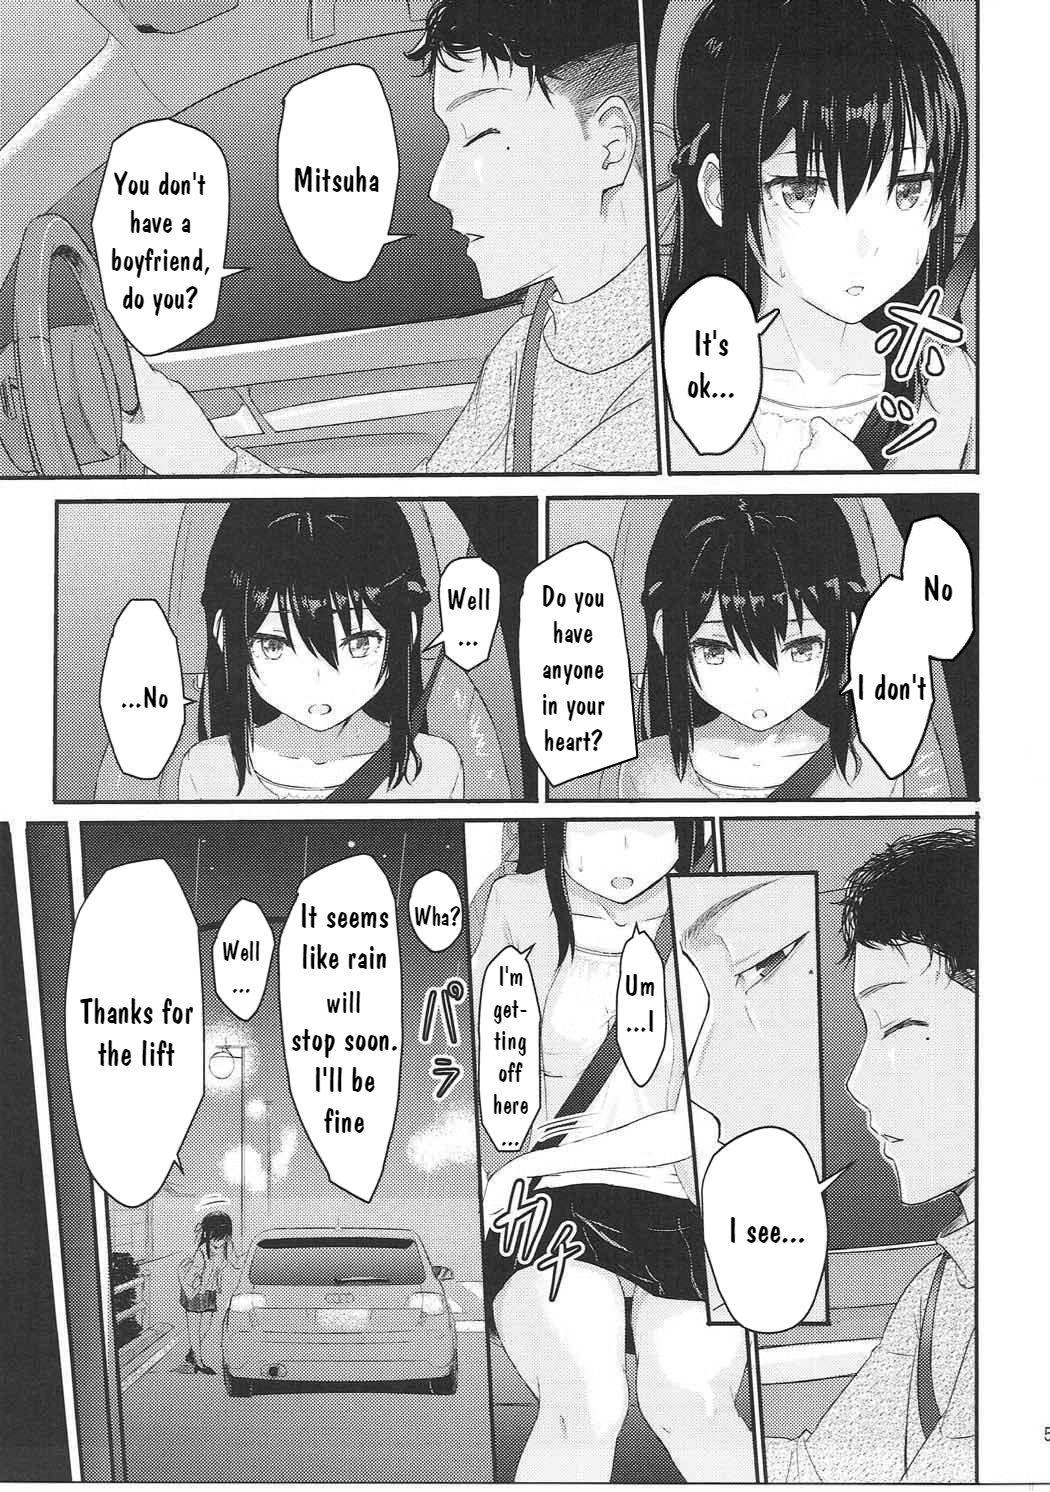 Anus Mitsuha - Kimi no na wa. Family Taboo - Page 4